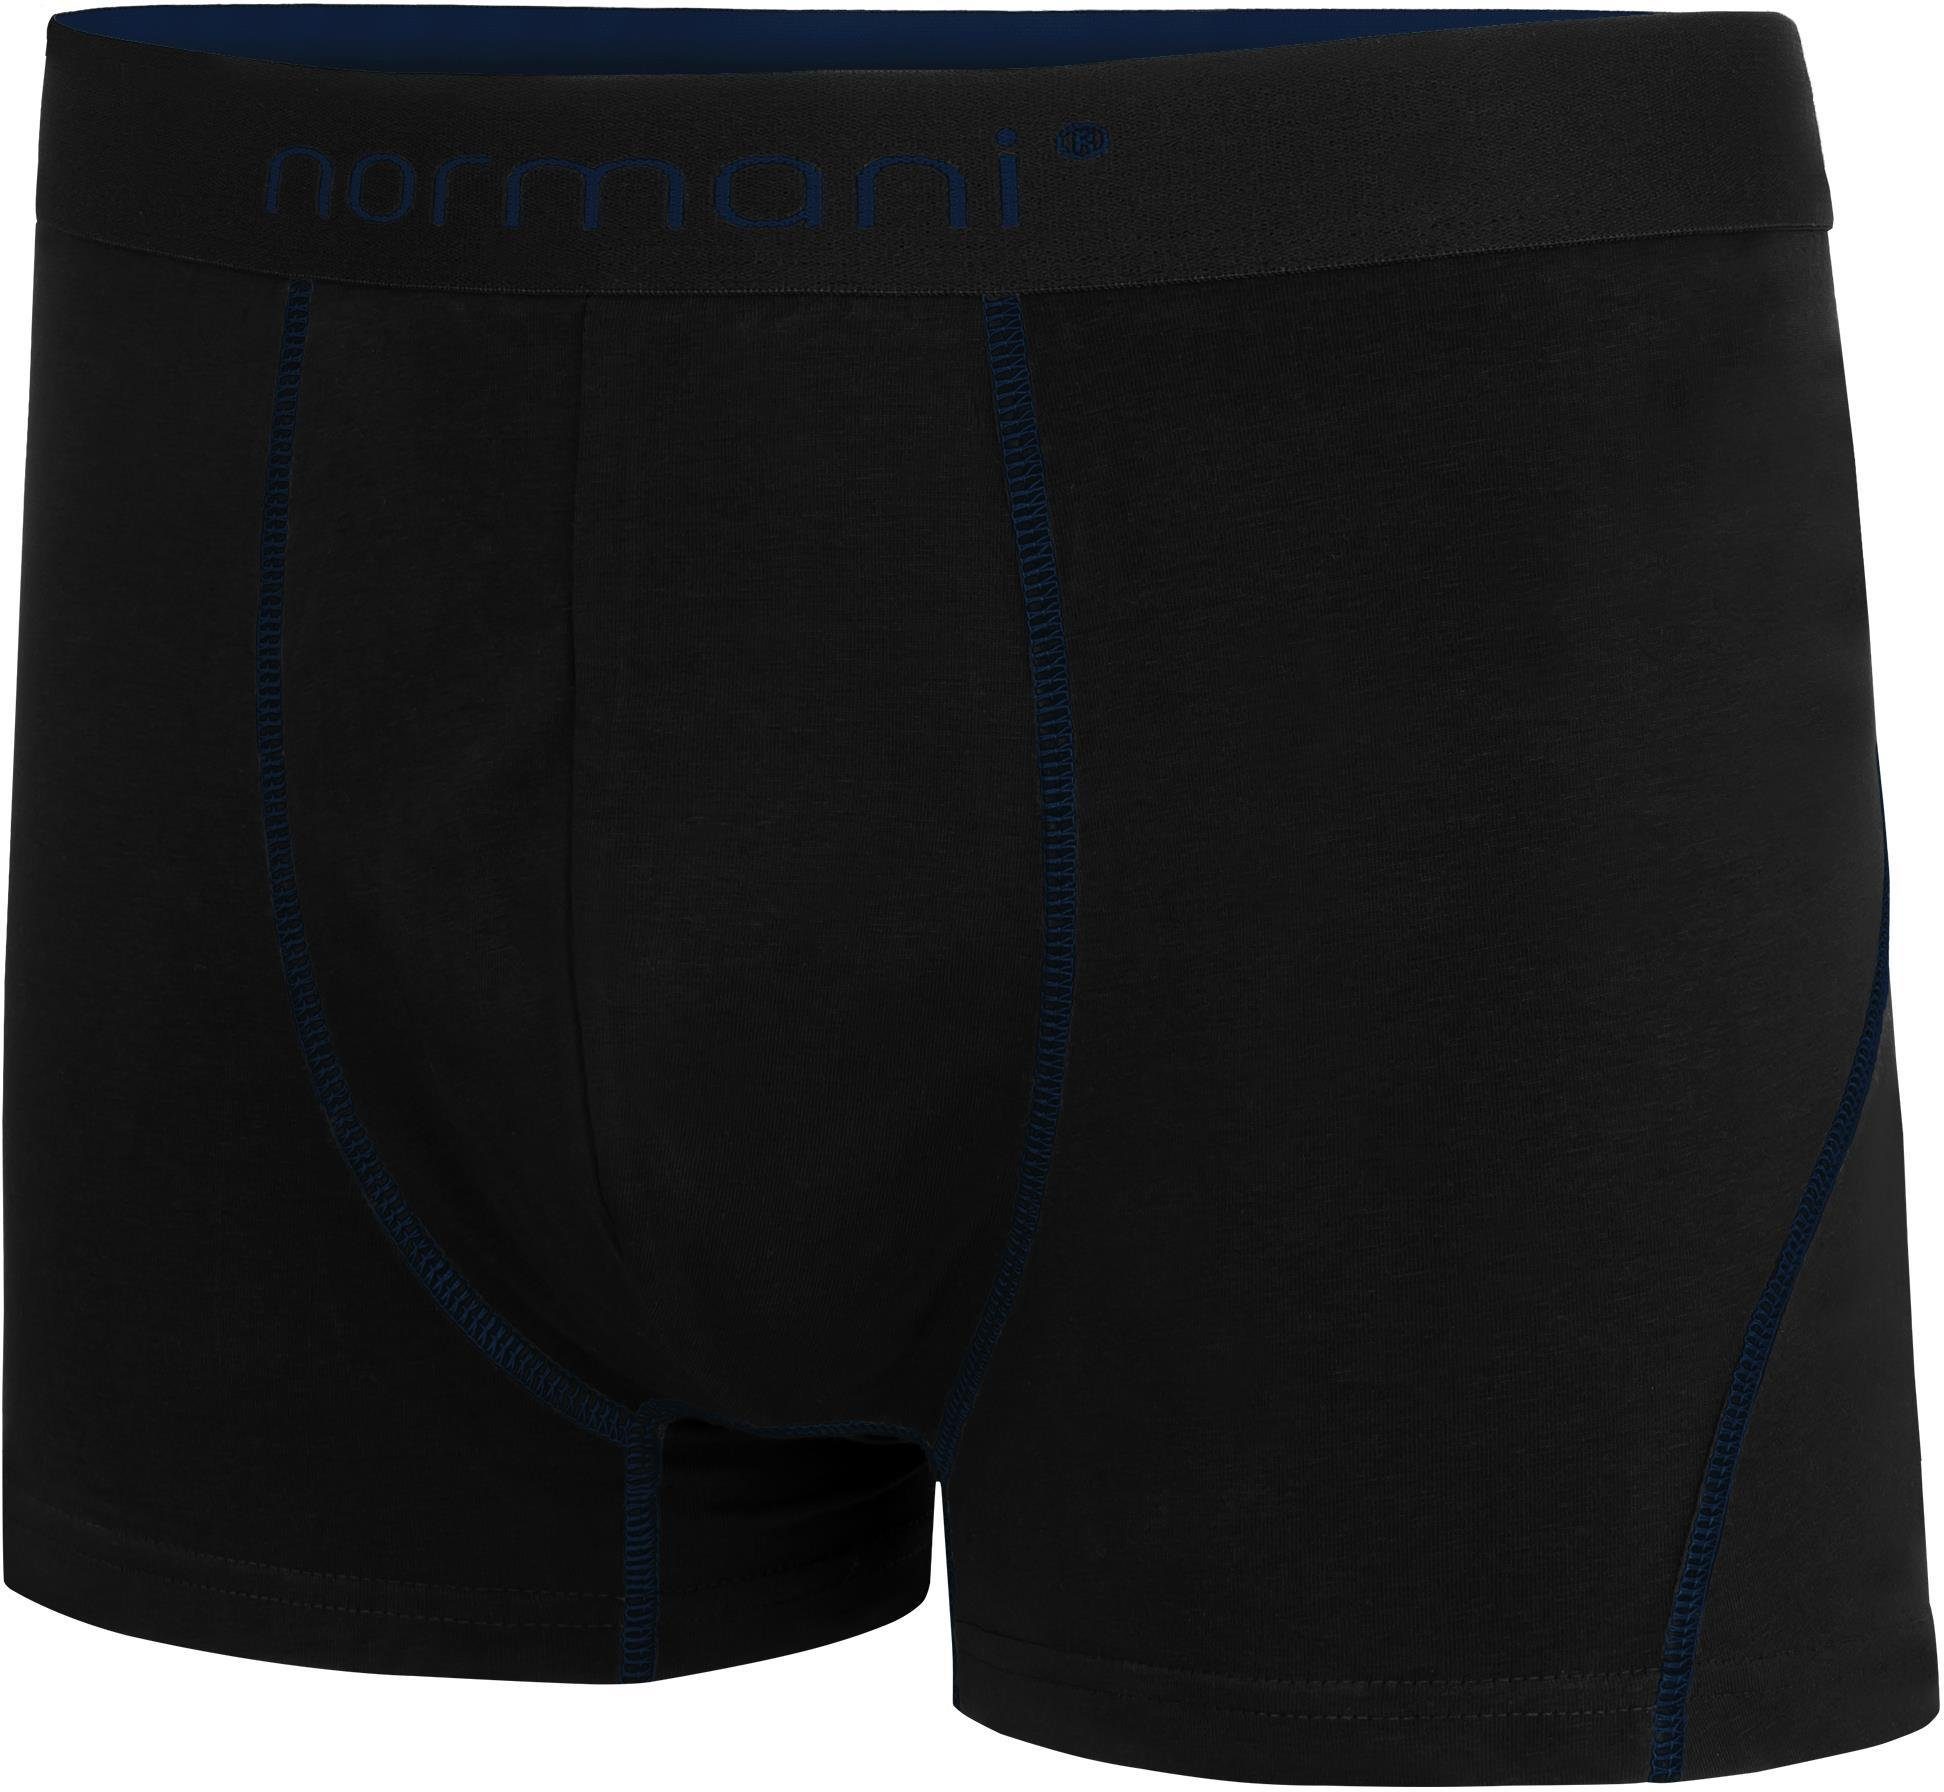 normani Boxershorts 6 aus Männer für Herren Baumwolle Dunkelblau atmungsaktiver Baumwoll-Boxershorts Unterhose